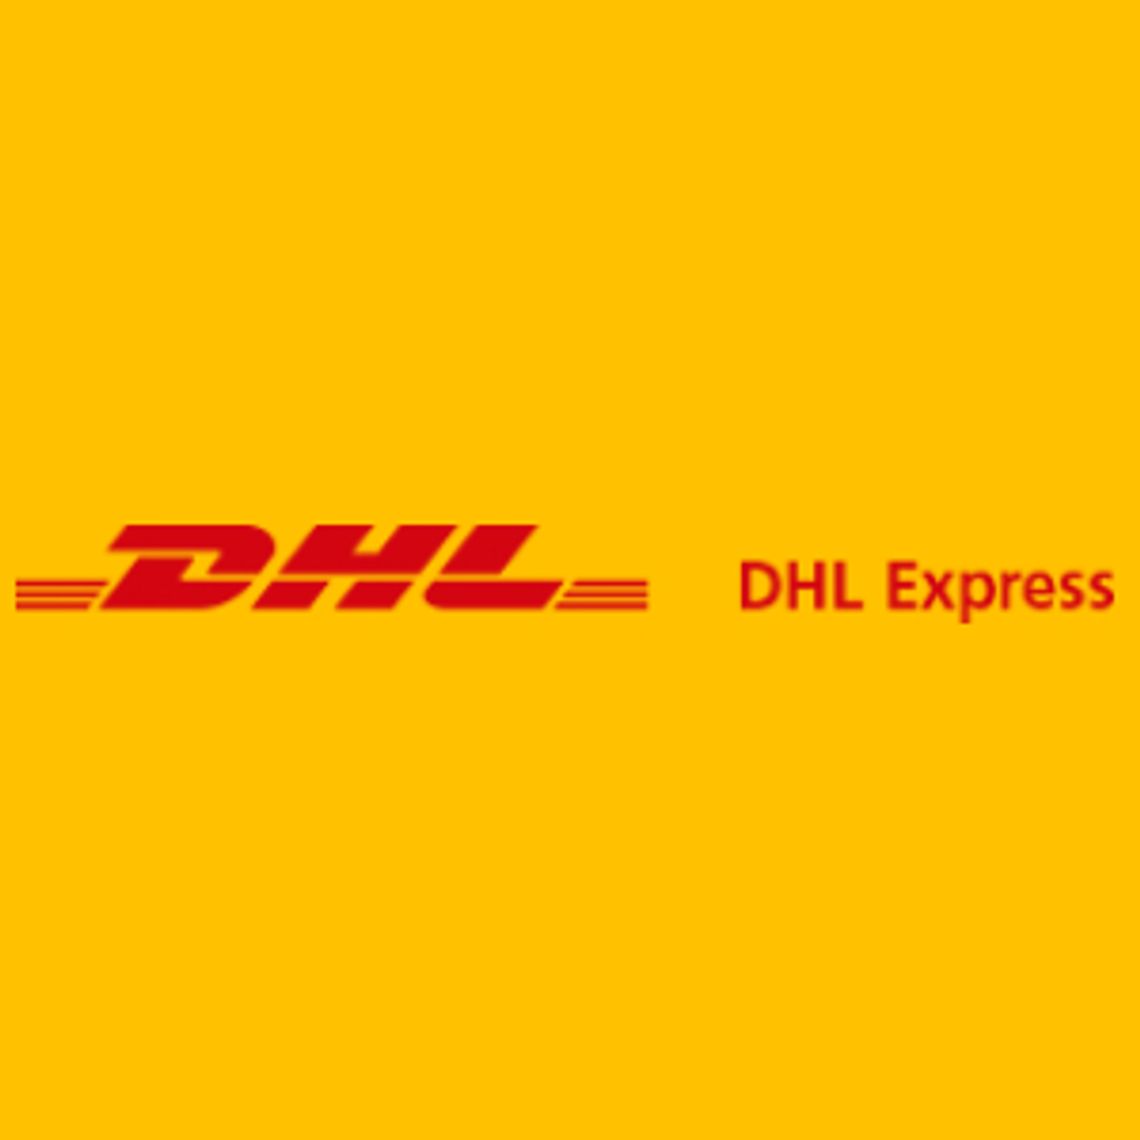 Międzynarodowe przesyłki kurierskie - DHL Express